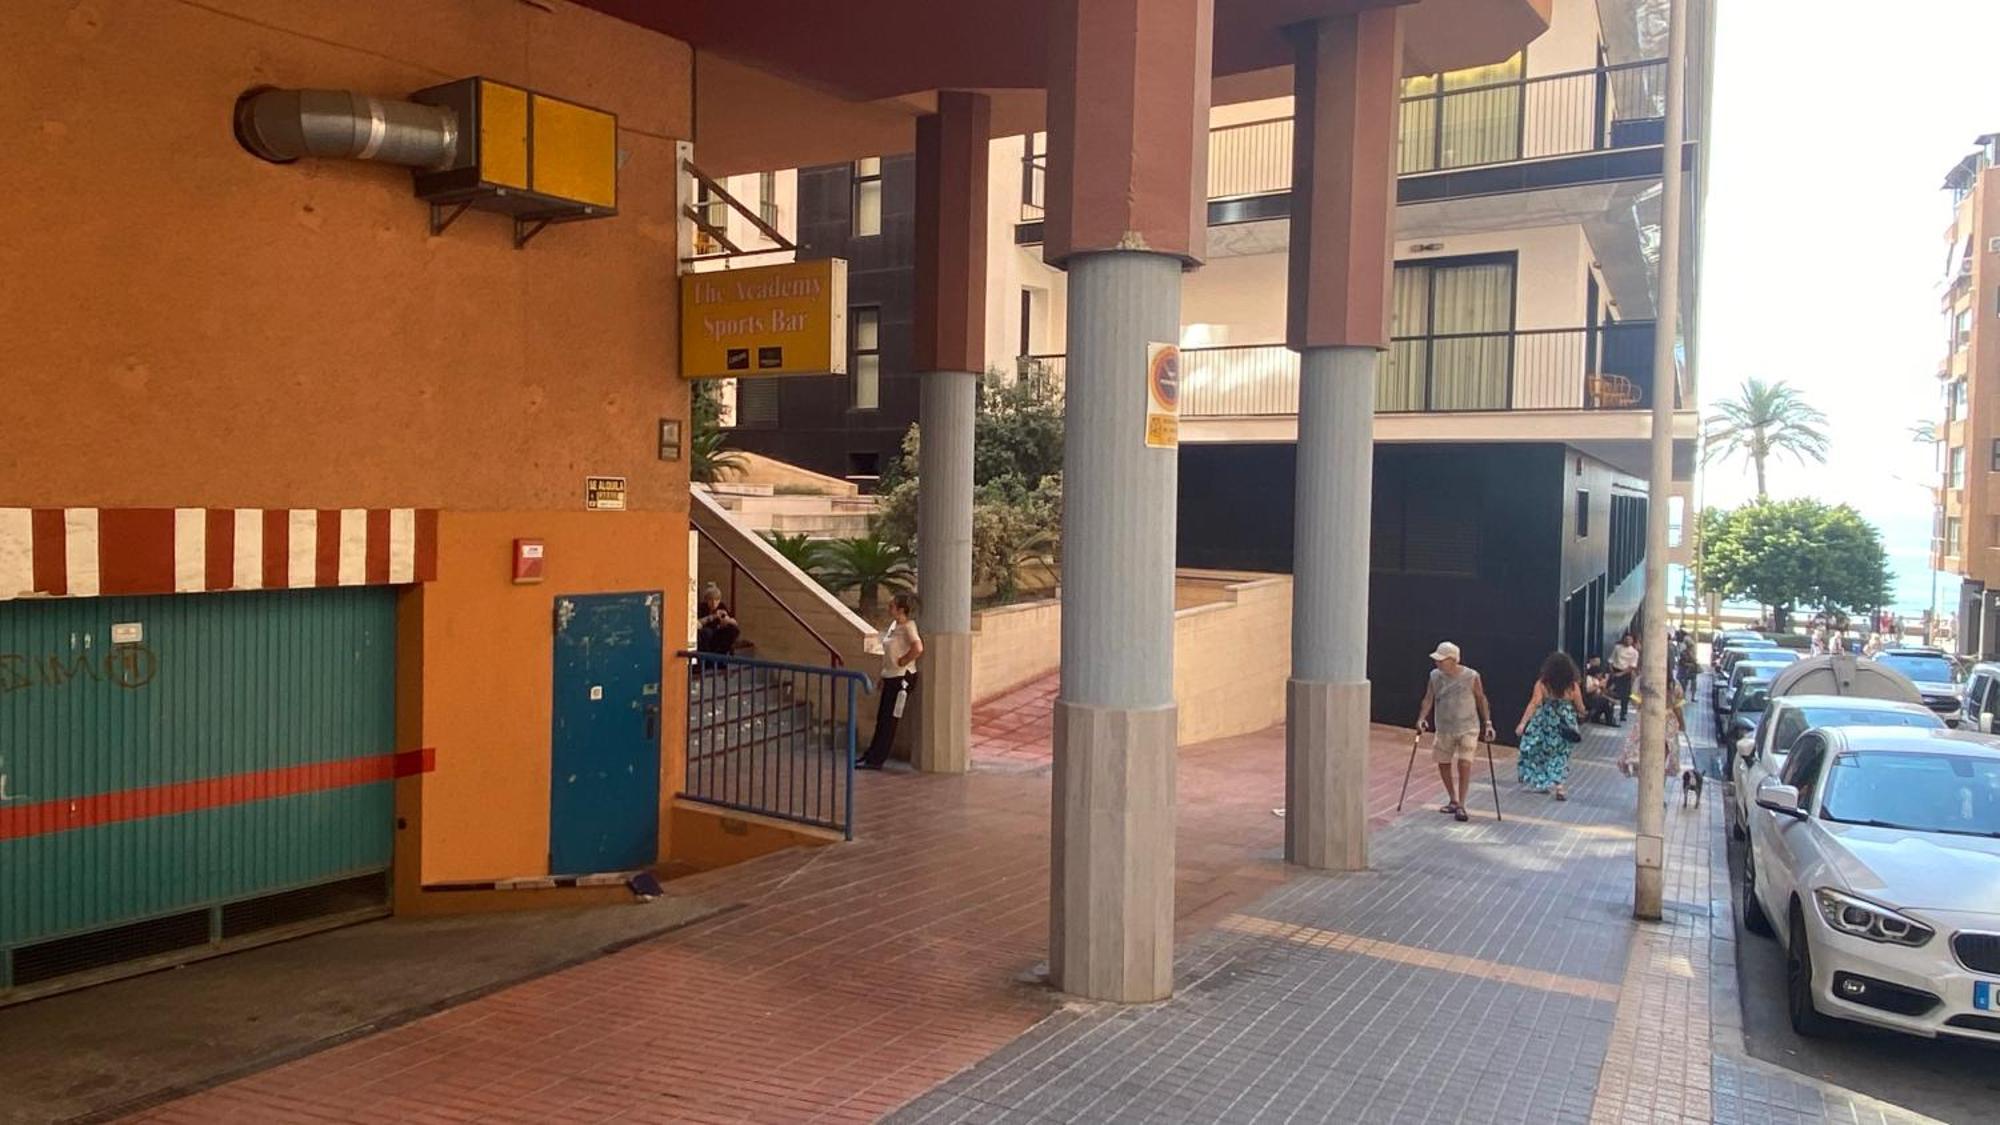 ベニドルムSolymar Poniente Apartamento Recien Reformado A 3 Min De Playa Poniente Y Del Centro Parking Opcionalアパートメント エクステリア 写真